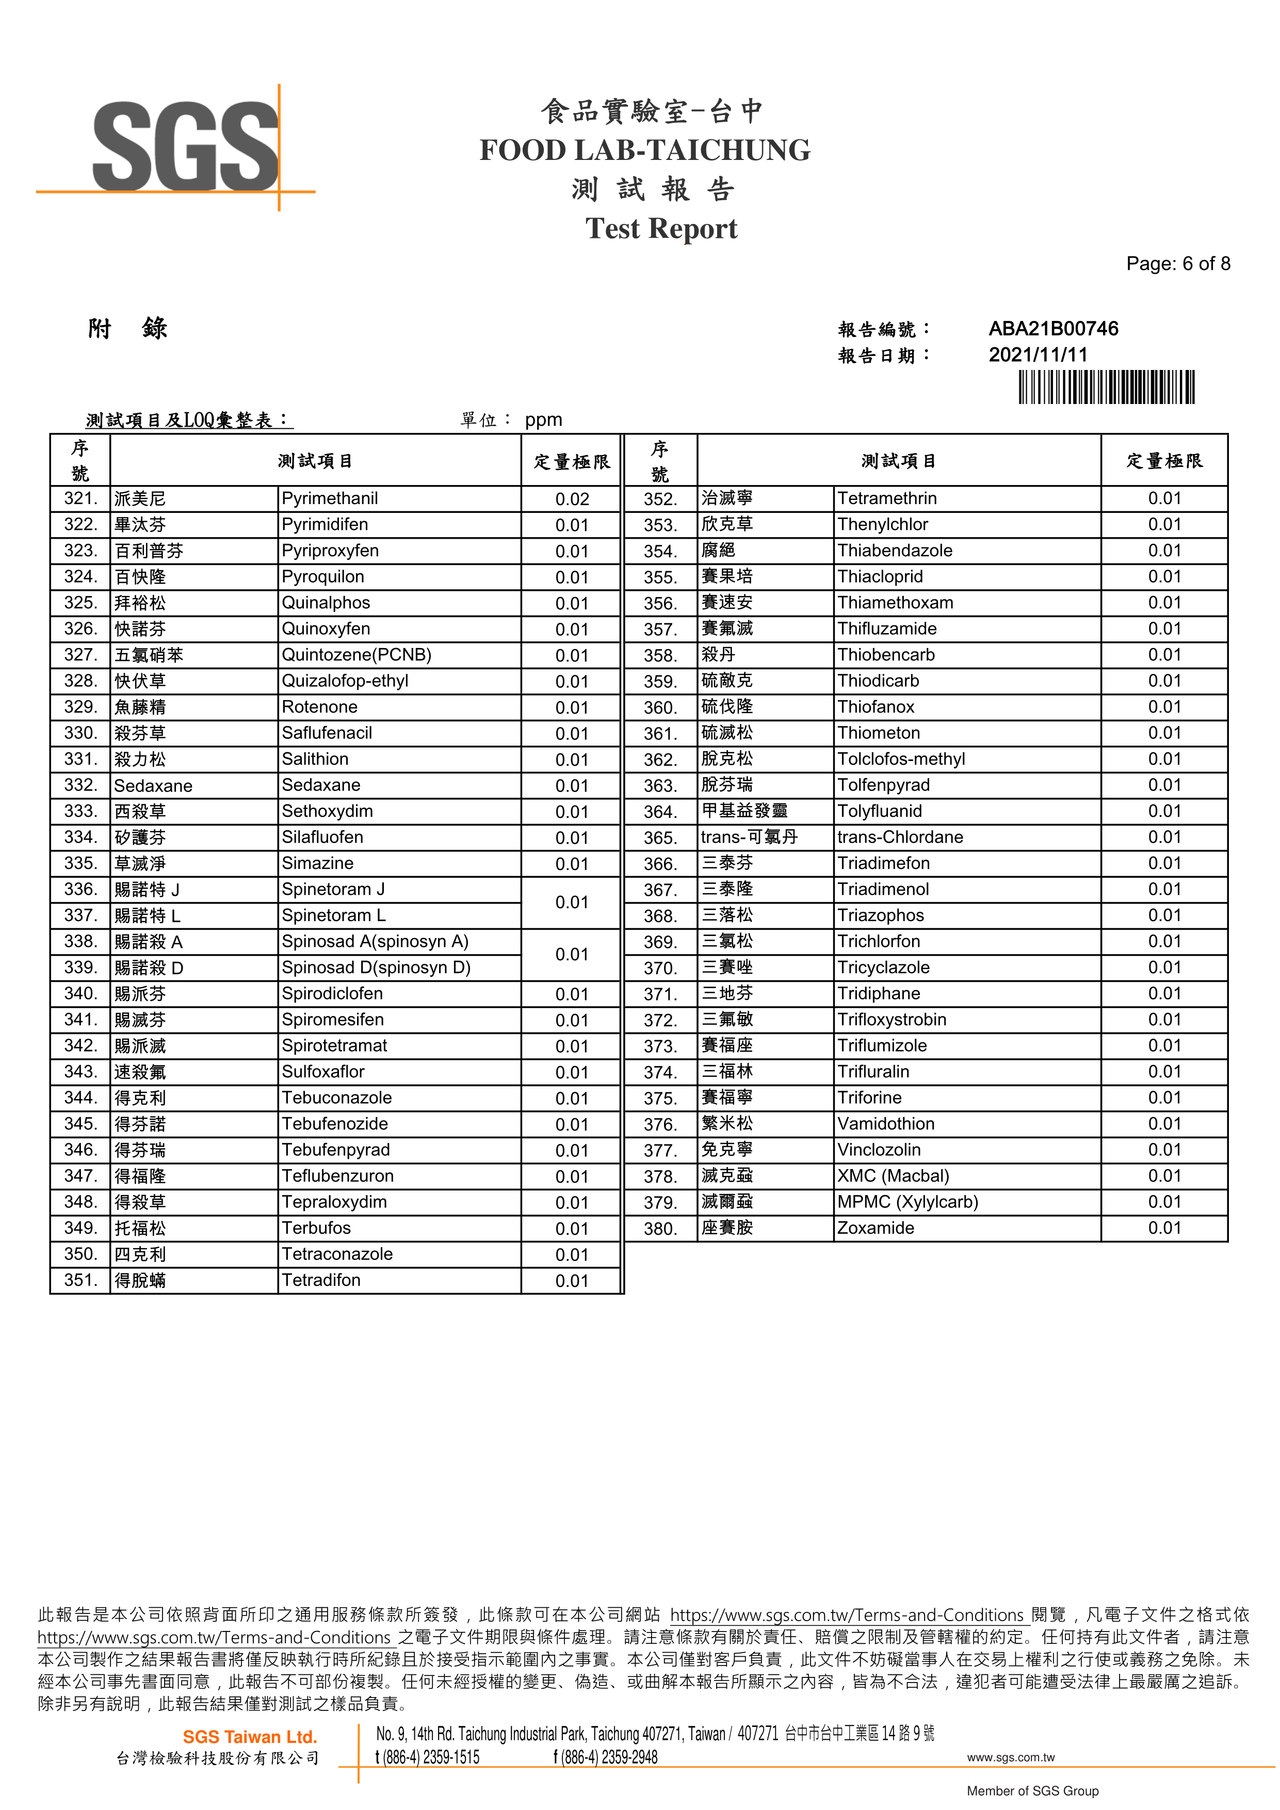 彩椒菇菇寶寶粥-農藥殘留380檢驗報告2021.11.11